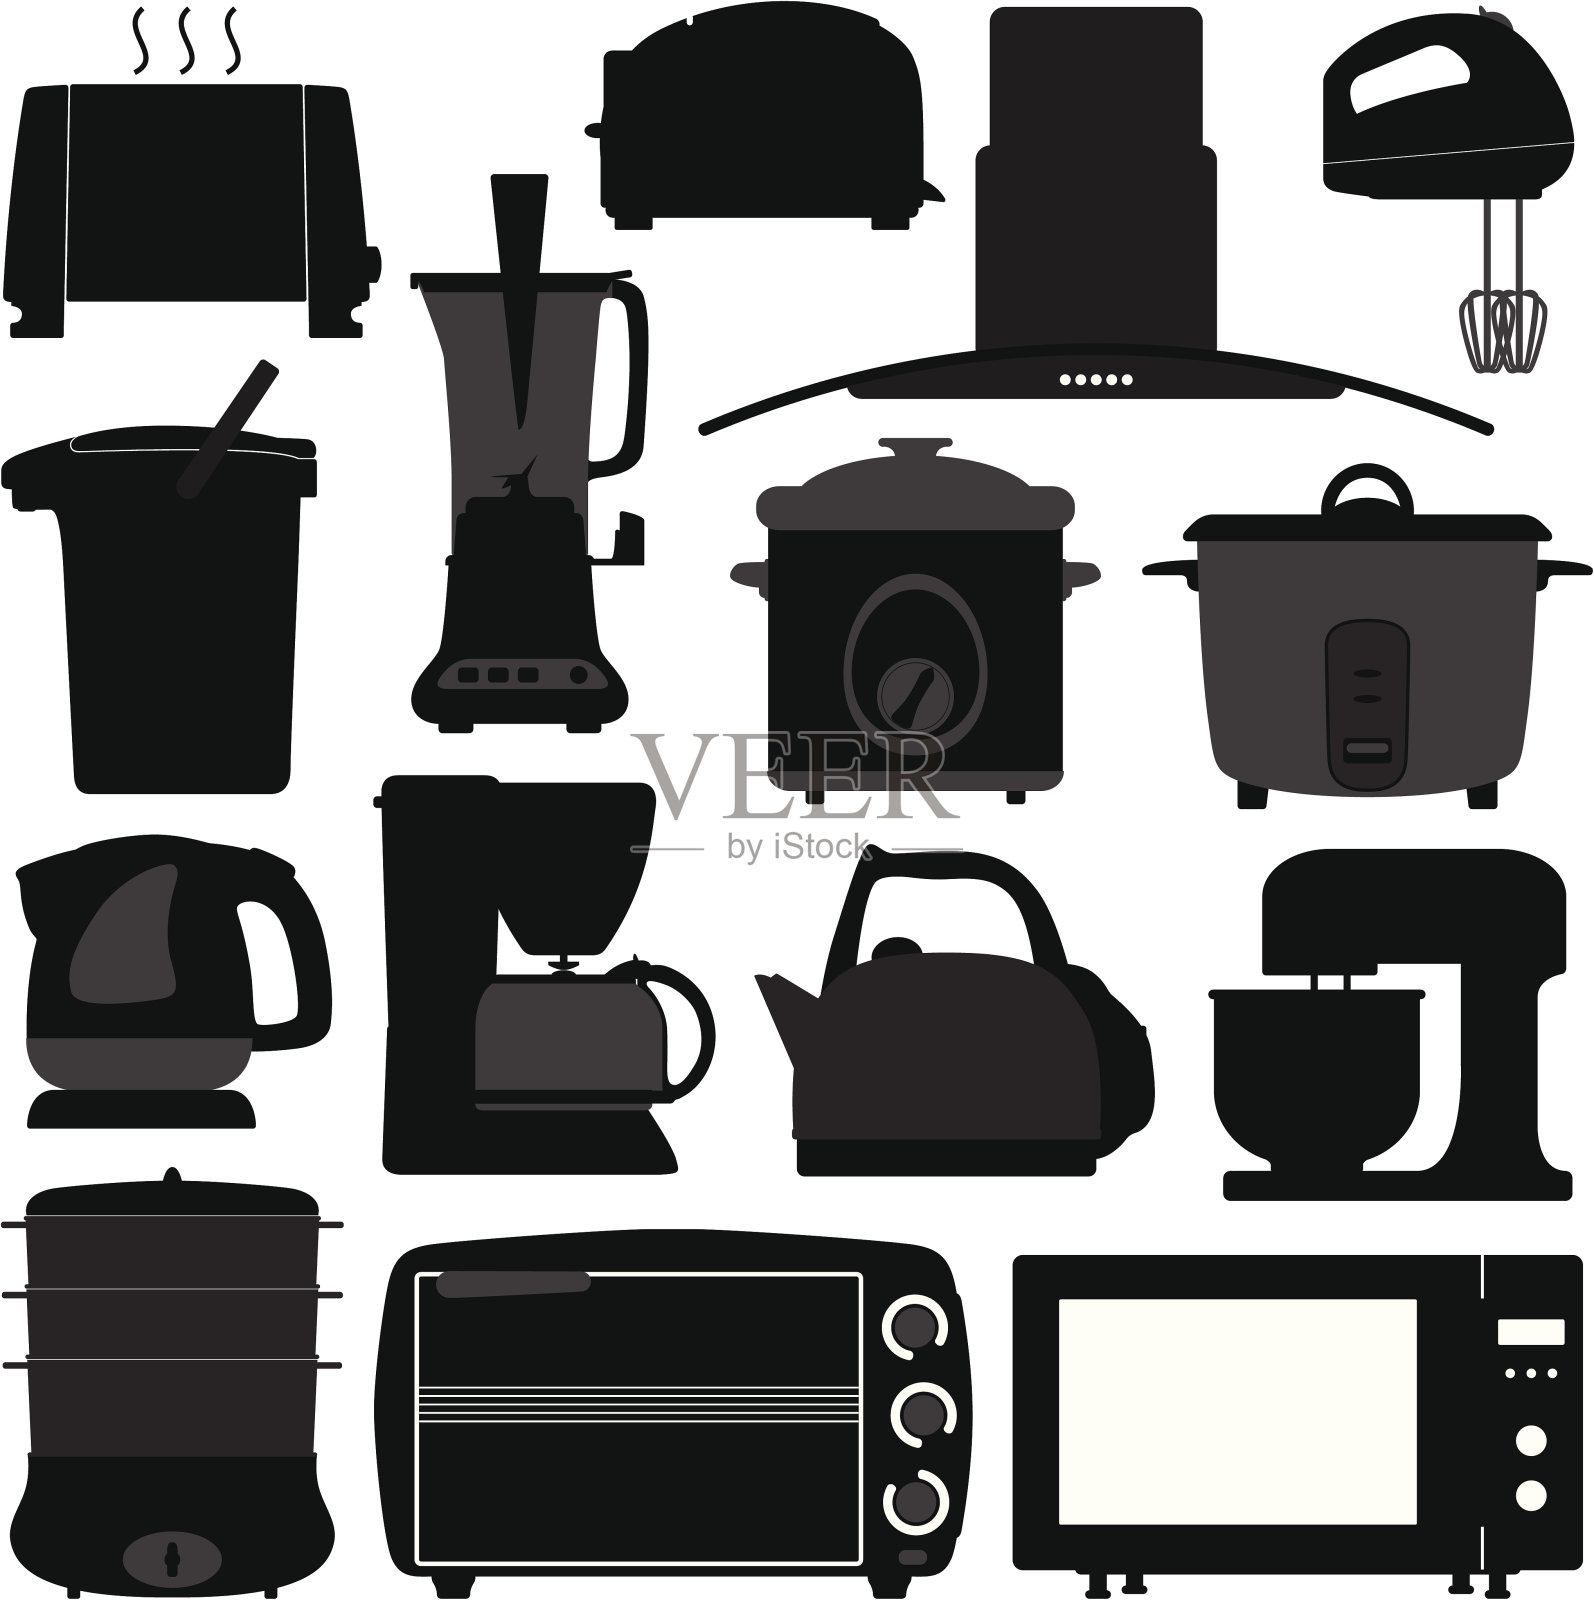 厨房电器，电子电器，工具图标素材